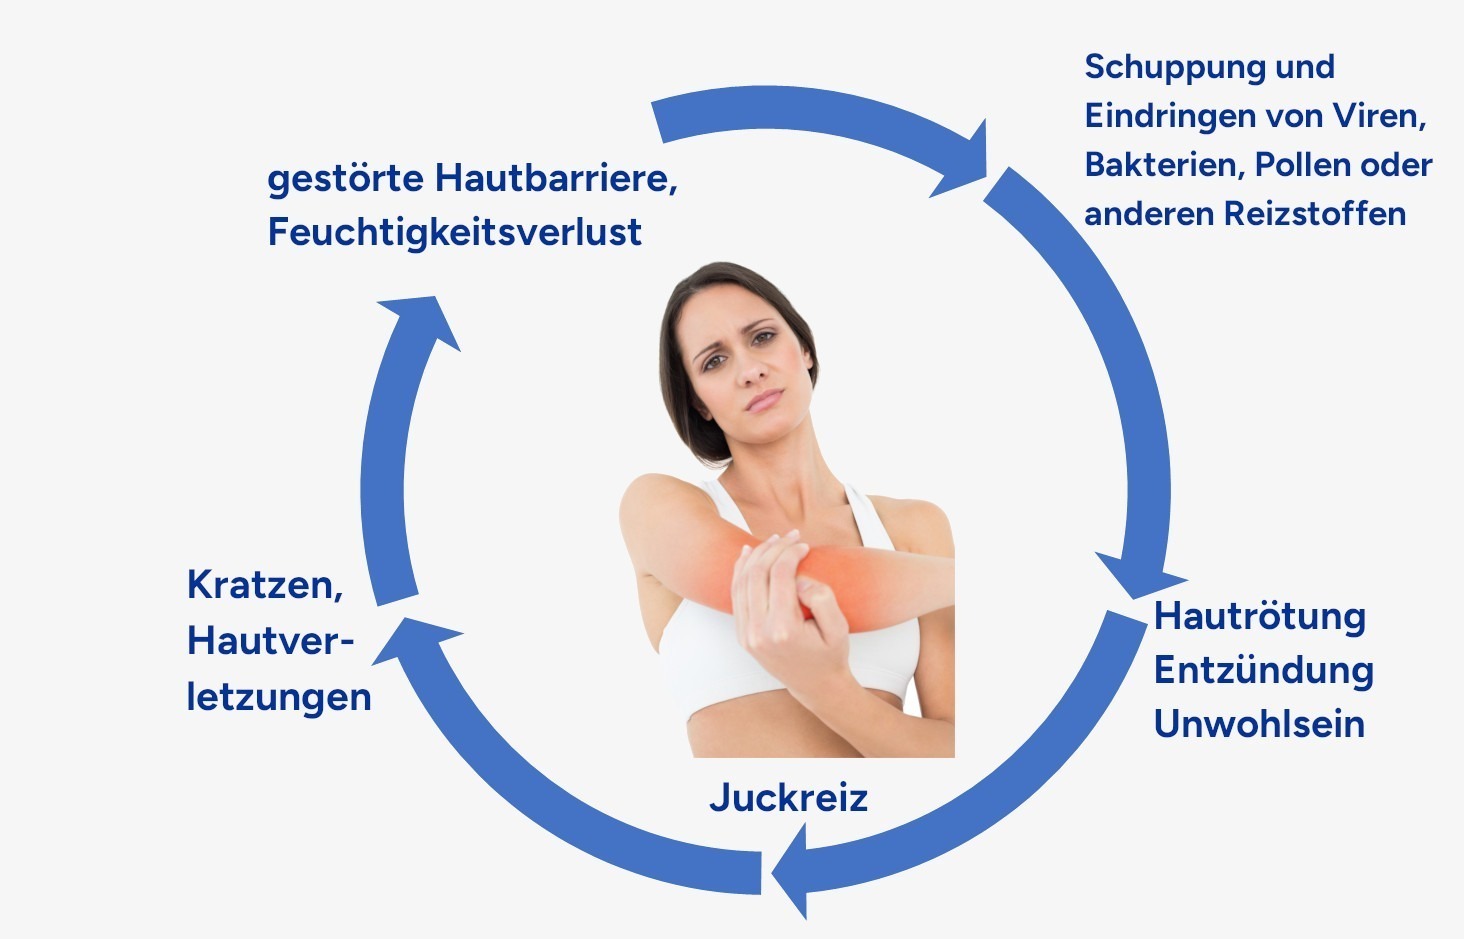 Juck-Kratz-Zyklus von der gestörten Hautbarriere über Schuppung dann Entzündung zu Juckreiz und dem Kratzen hin zur einer erneuten Störung der Hautbarriere.